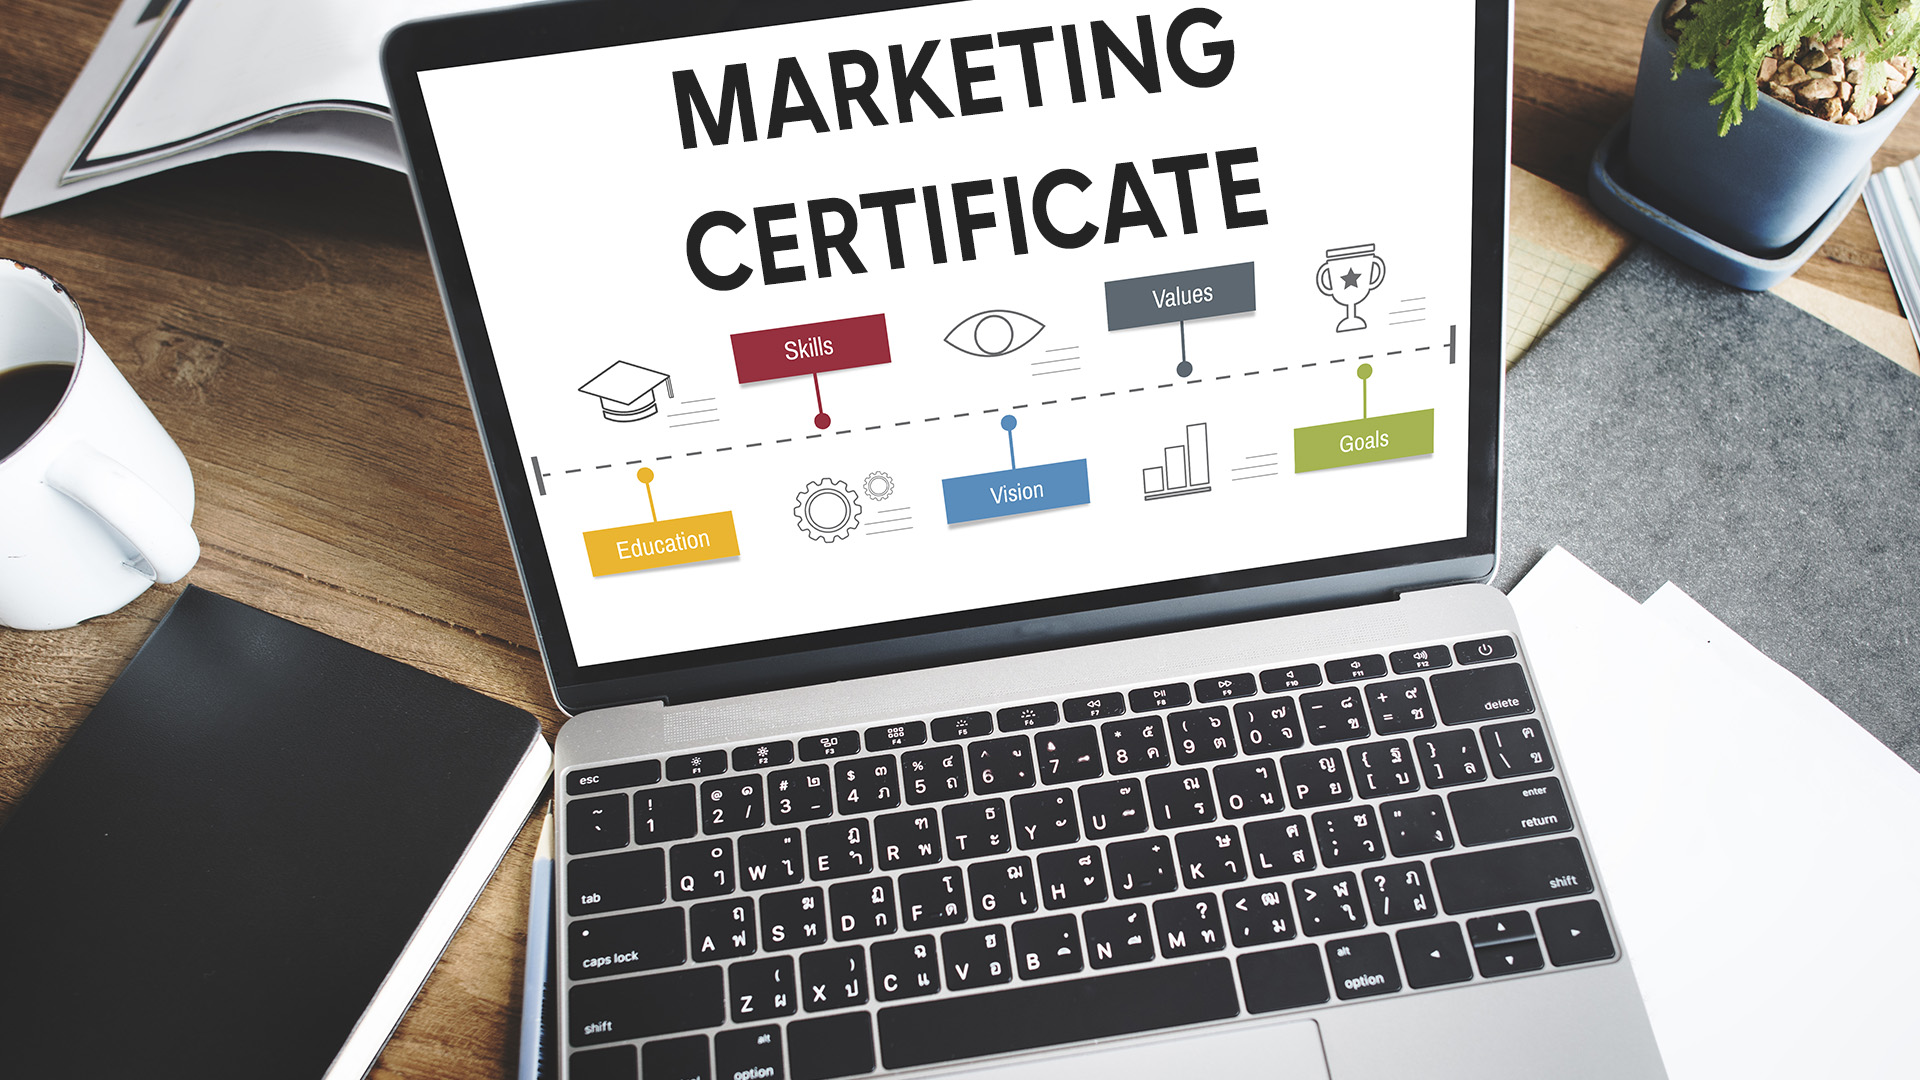 Digital marketing certificates earned online